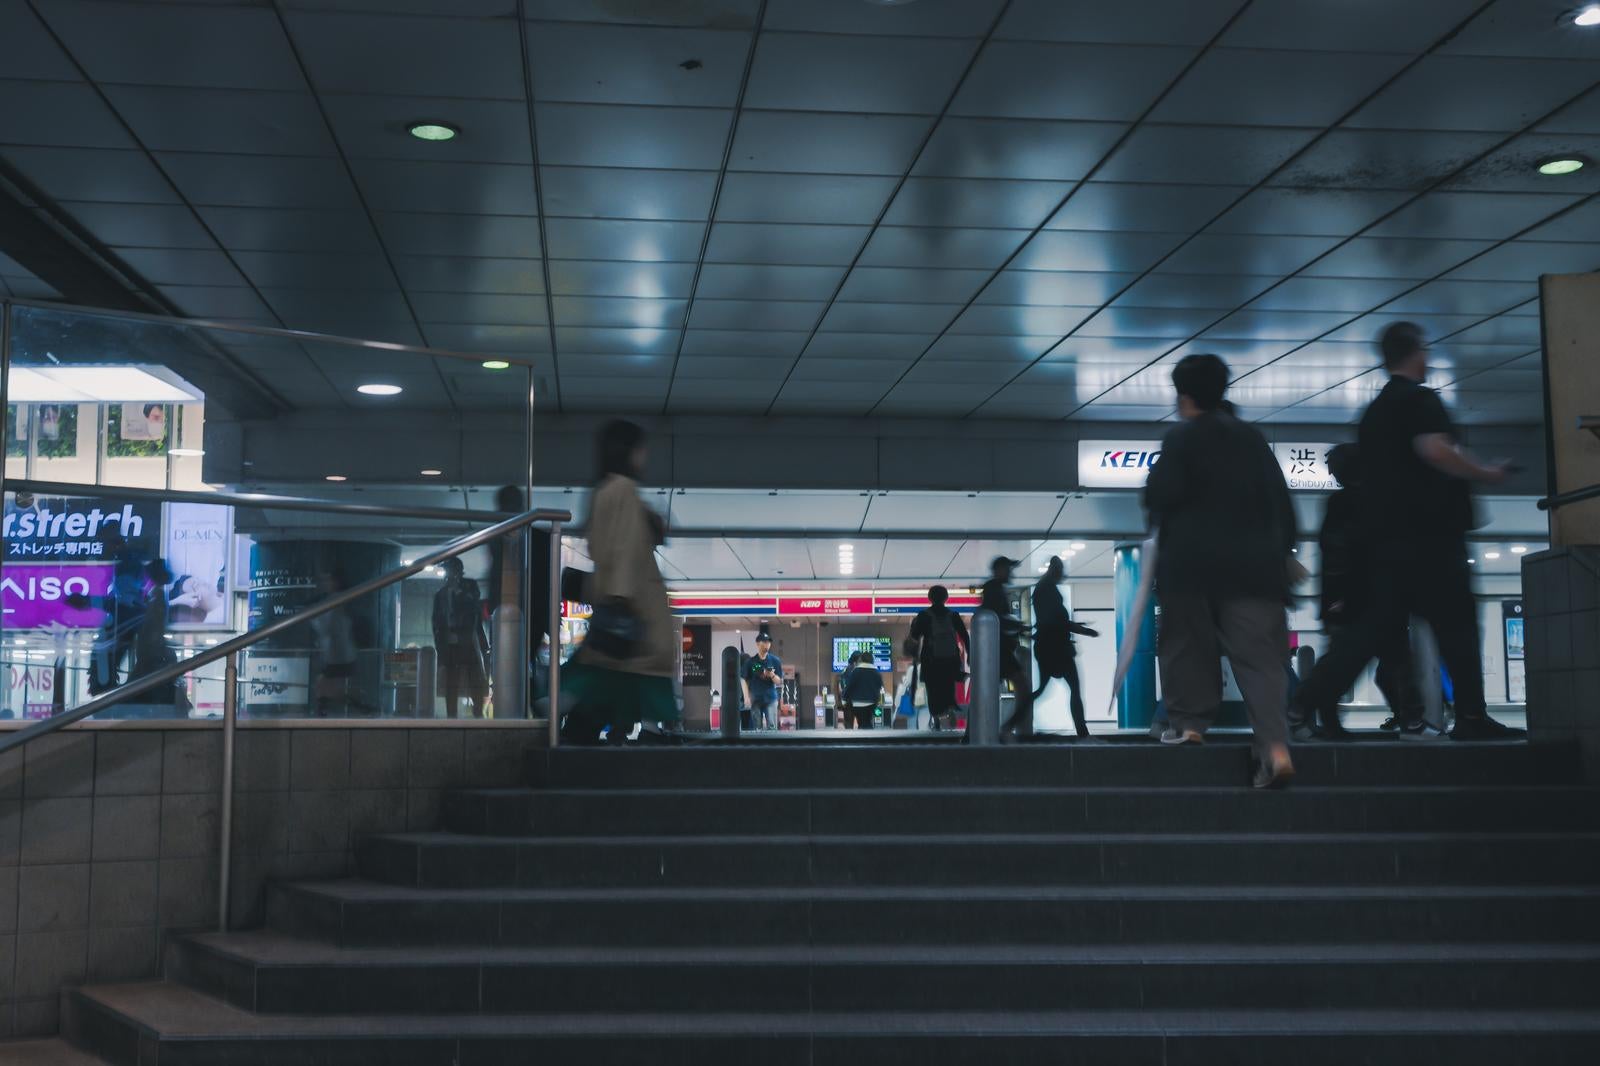 「渋谷駅地下通路の賑わいと京王線の看板」の写真